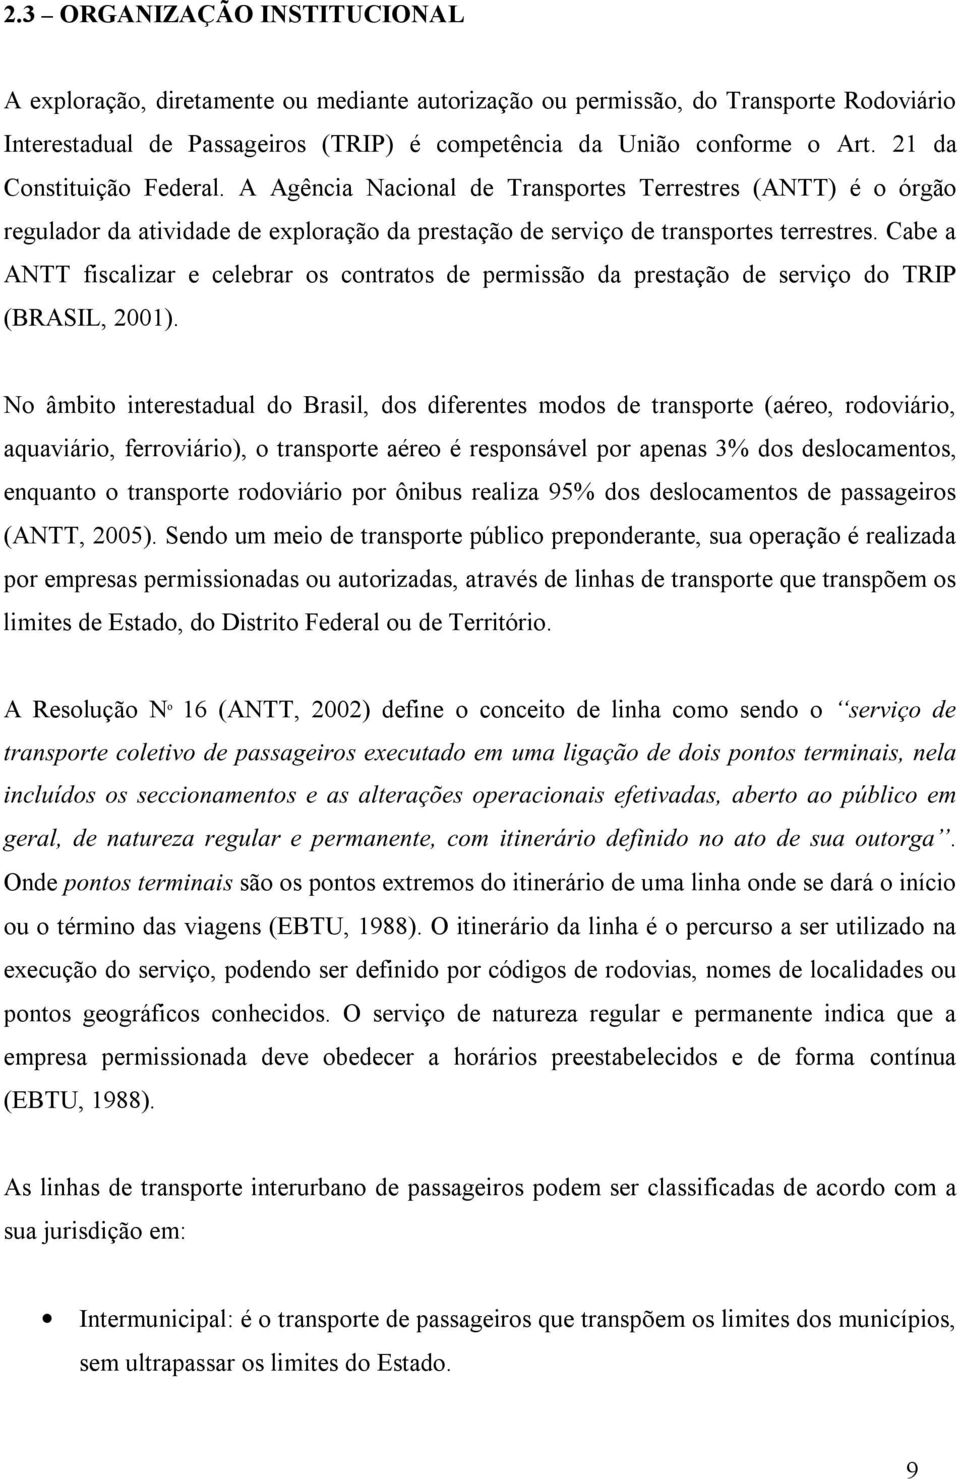 Cabe a ANTT fiscalizar e celebrar os contratos de permissão da prestação de serviço do TRIP (BRASIL, 2001).